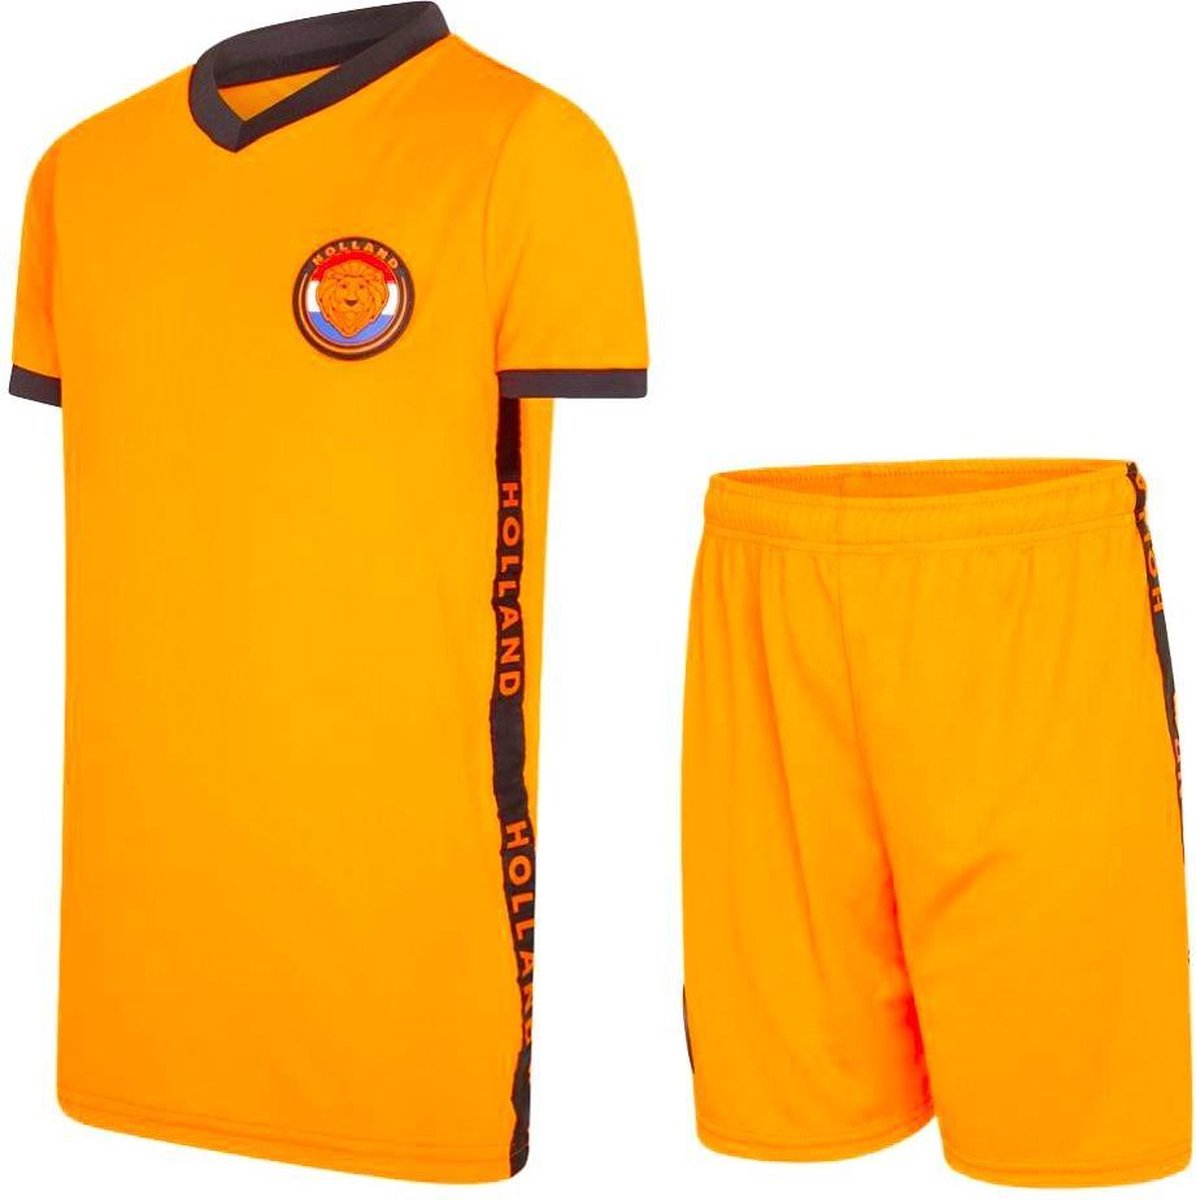 Oranje jongens voetbaltenue 21/22 - Holland tenue - Oranje jongens trainingsset - kids voetbaltenue - Oranje shirt en broekje - maat 164